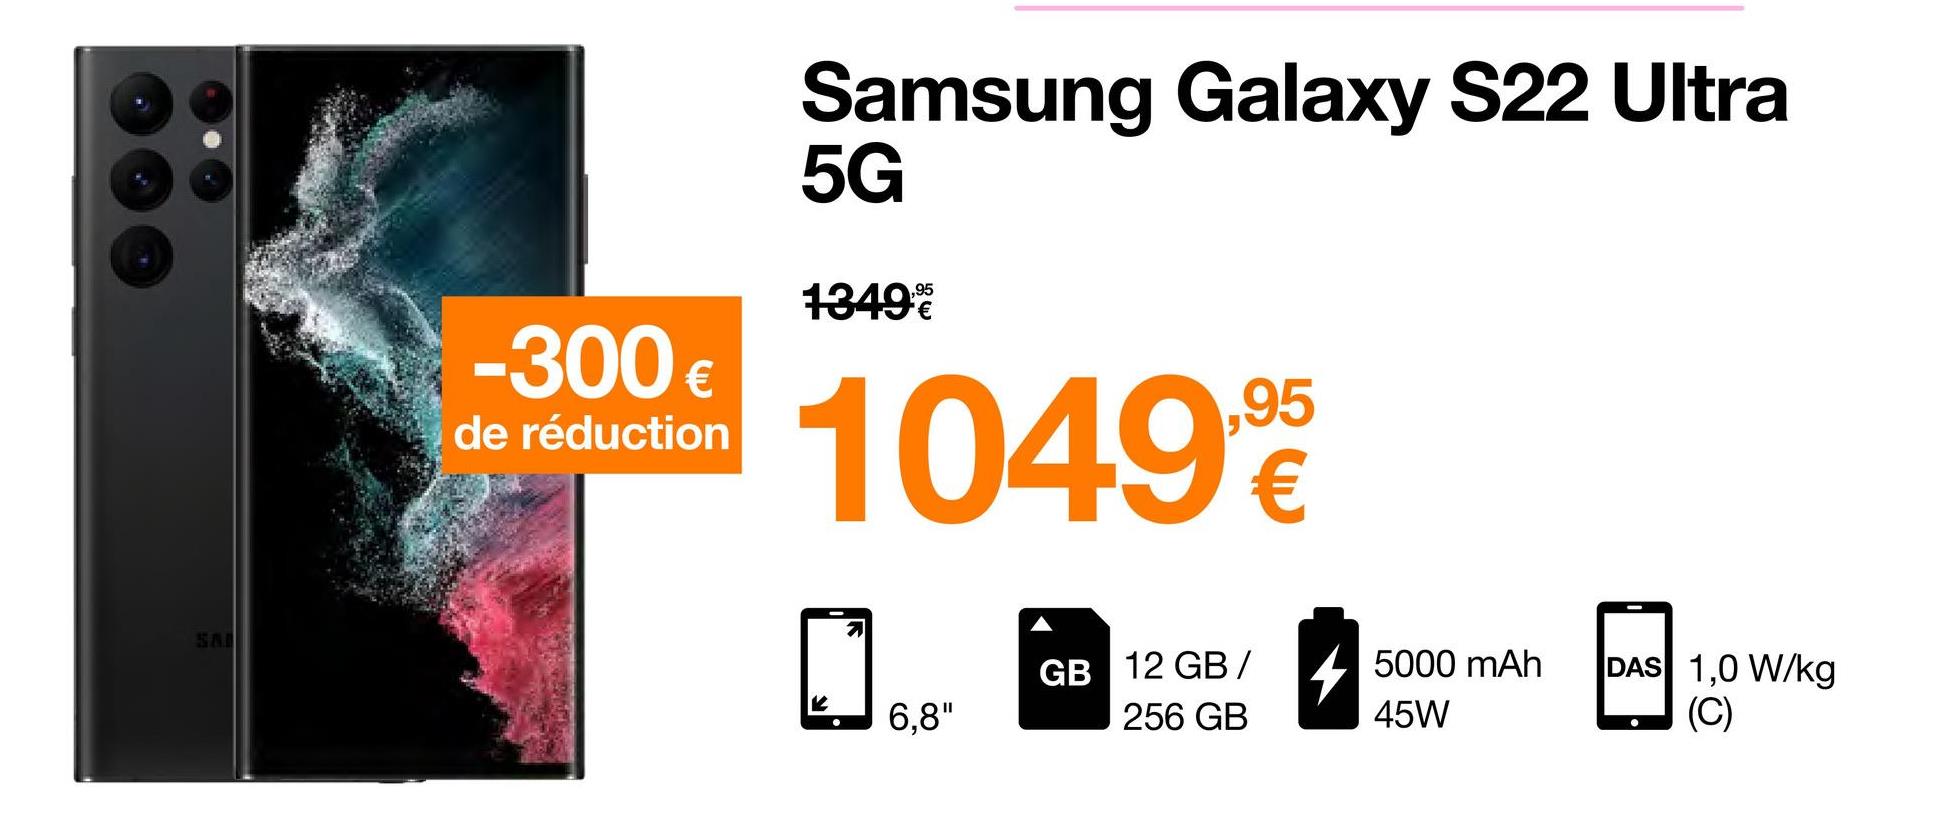 -300€
de réduction
Samsung Galaxy S22 Ultra
5G
1349%
1049,95
2
6,8"
GB 12 GB/ 5000 mAh
256 GB
45W
DAS 1,0 W/kg
(C)